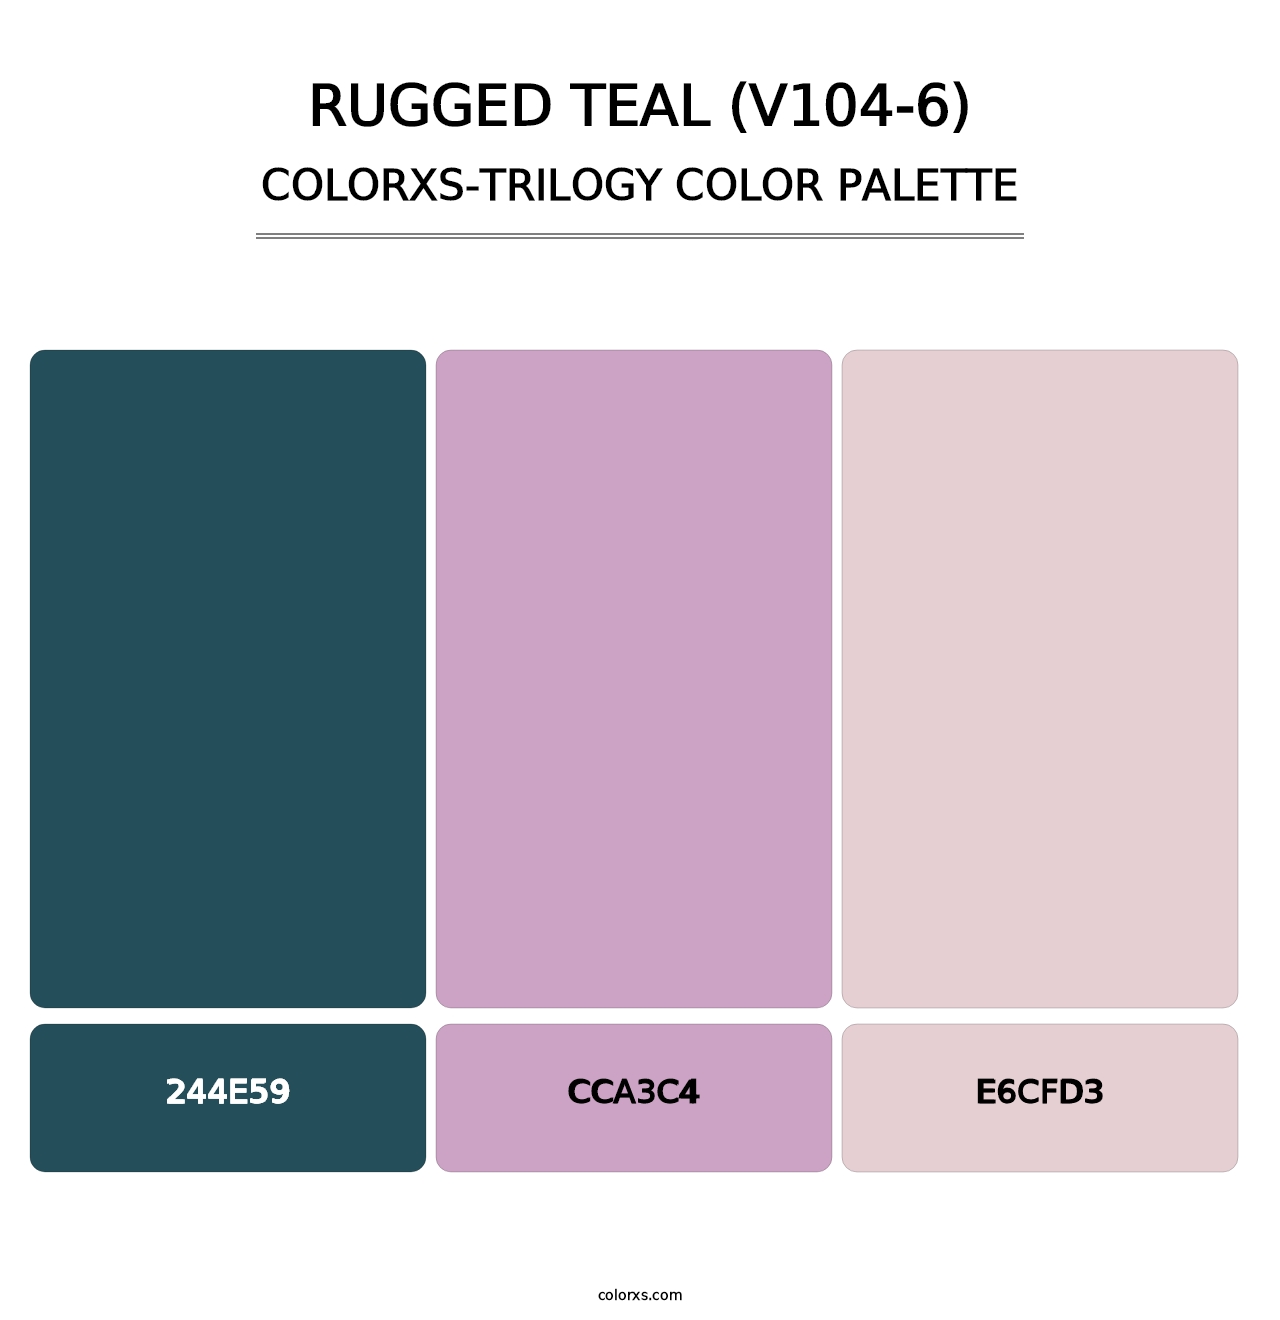 Rugged Teal (V104-6) - Colorxs Trilogy Palette